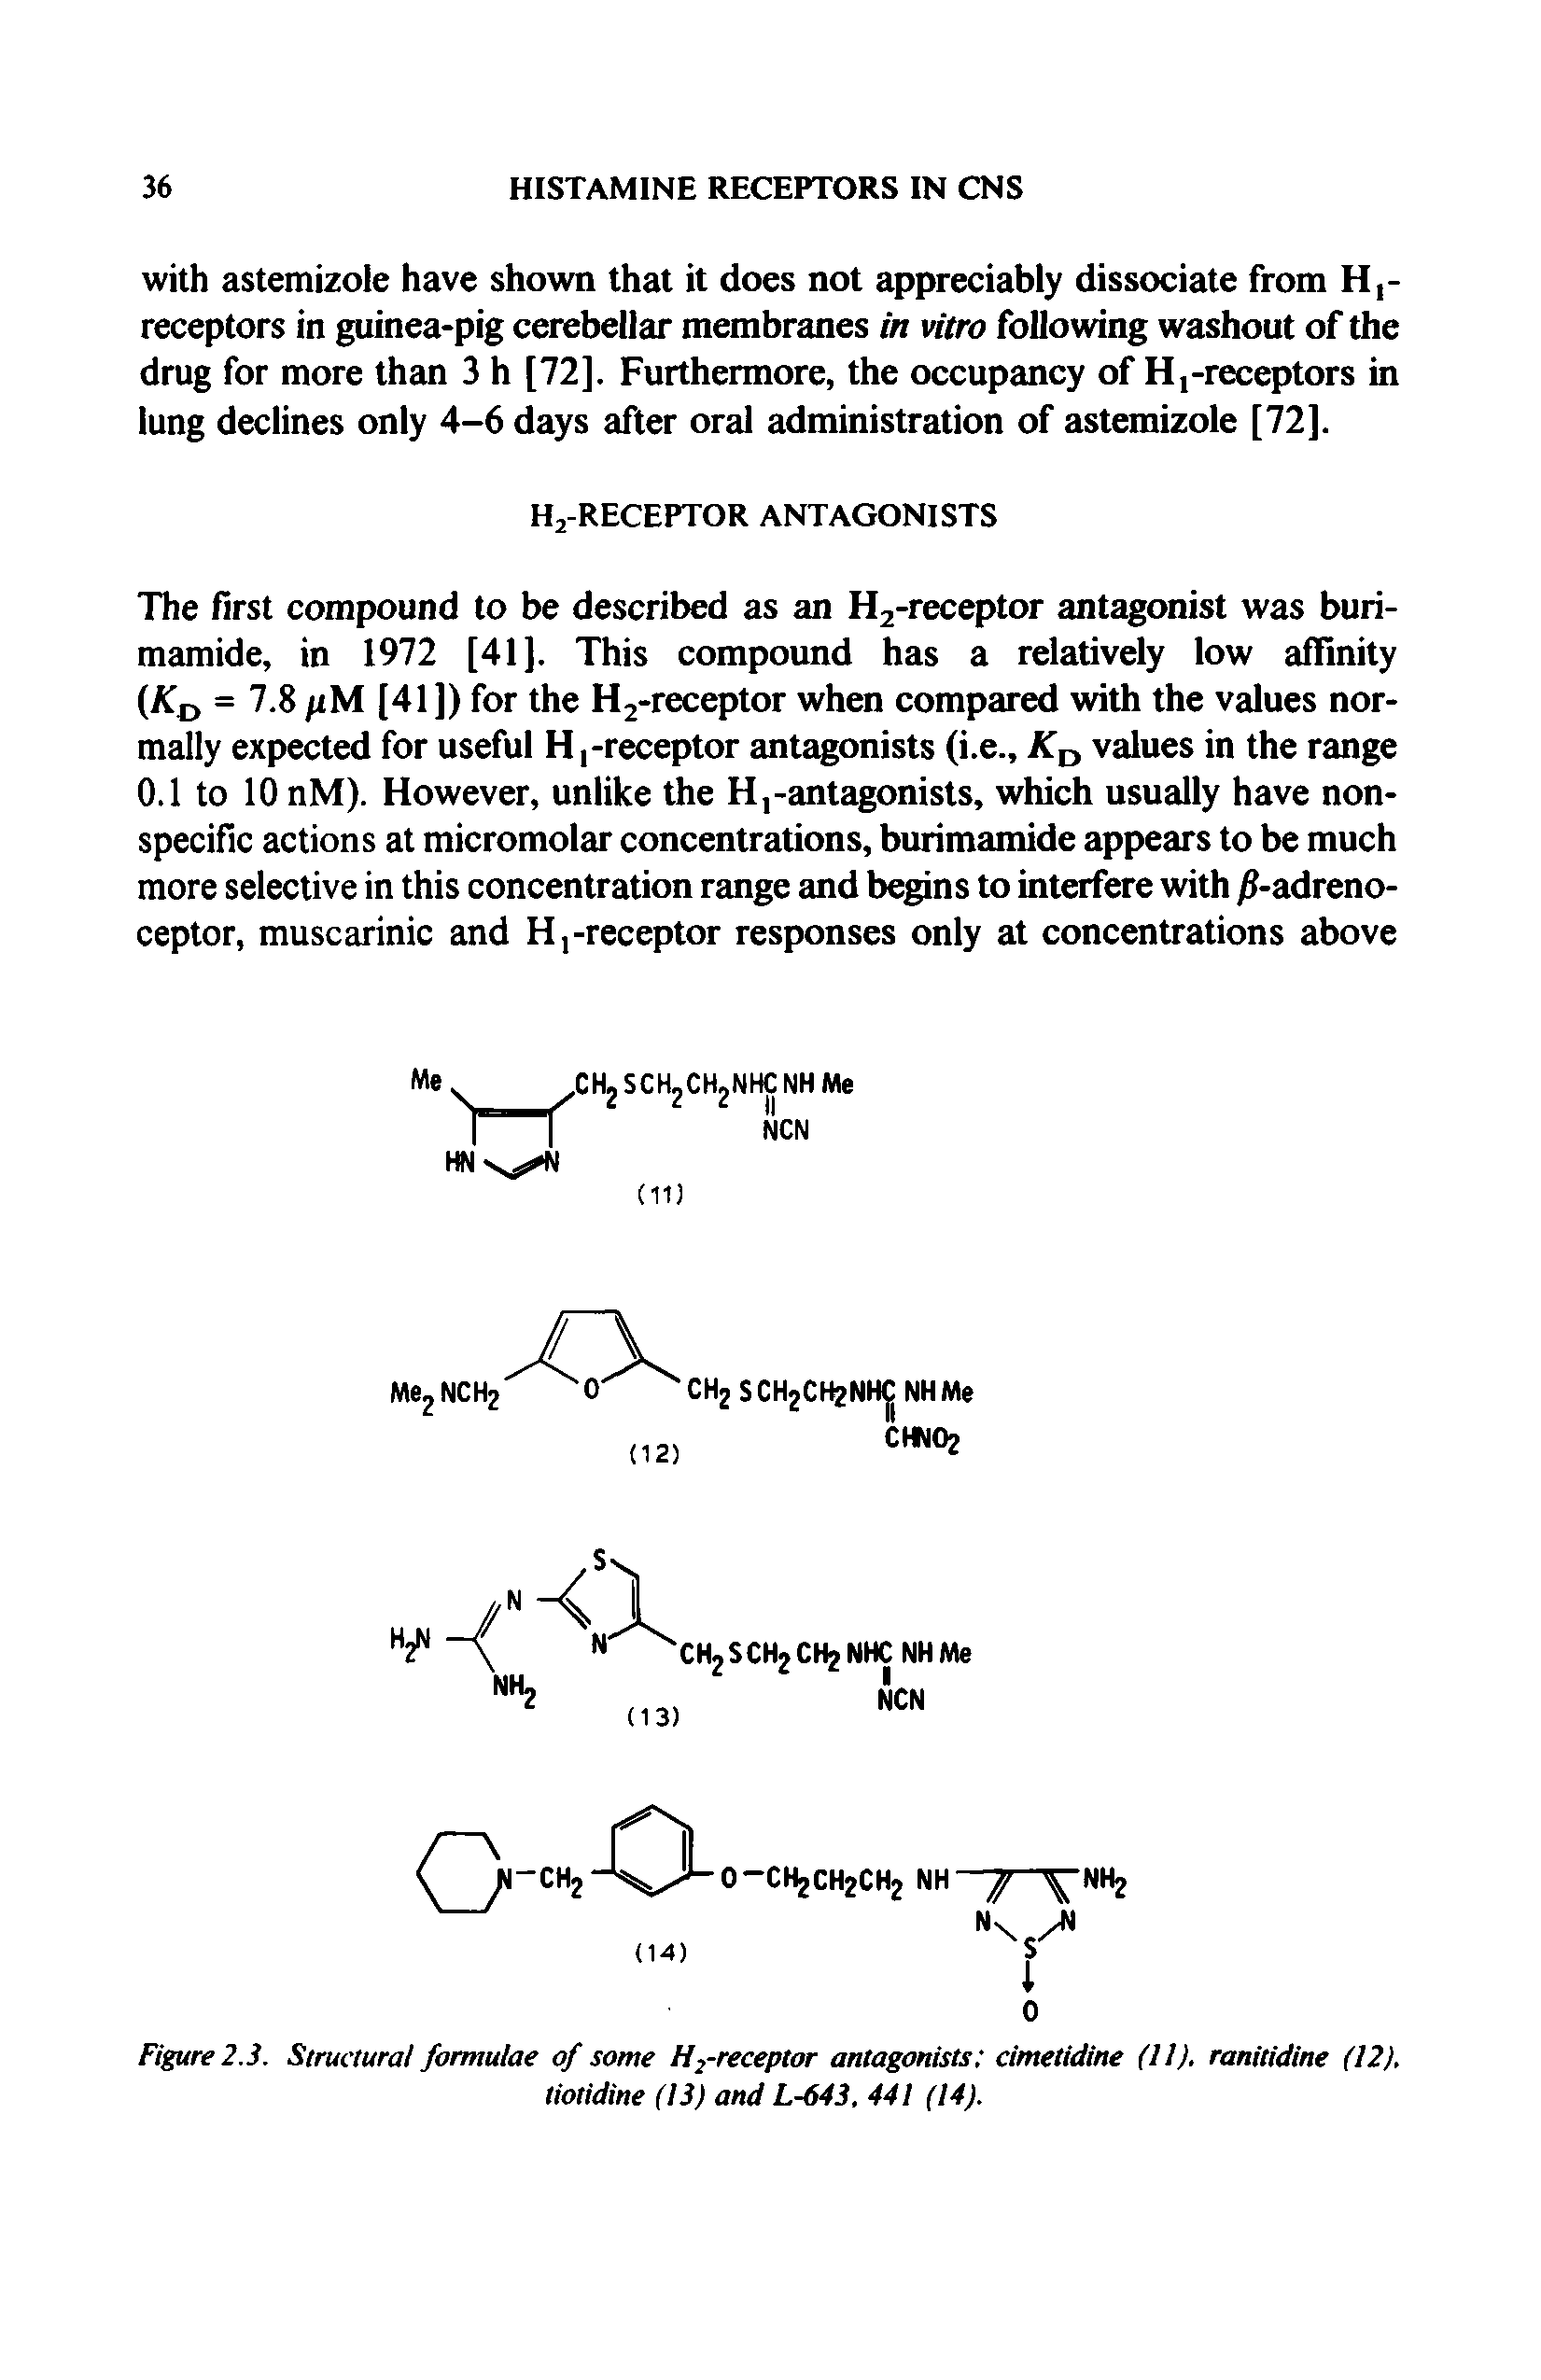 Figure 2.3. Structural formulae of some Hrreceptor antagonists cimetidine (11). ranitidine (12). tiotidine (13) and L-643. 441 (14).